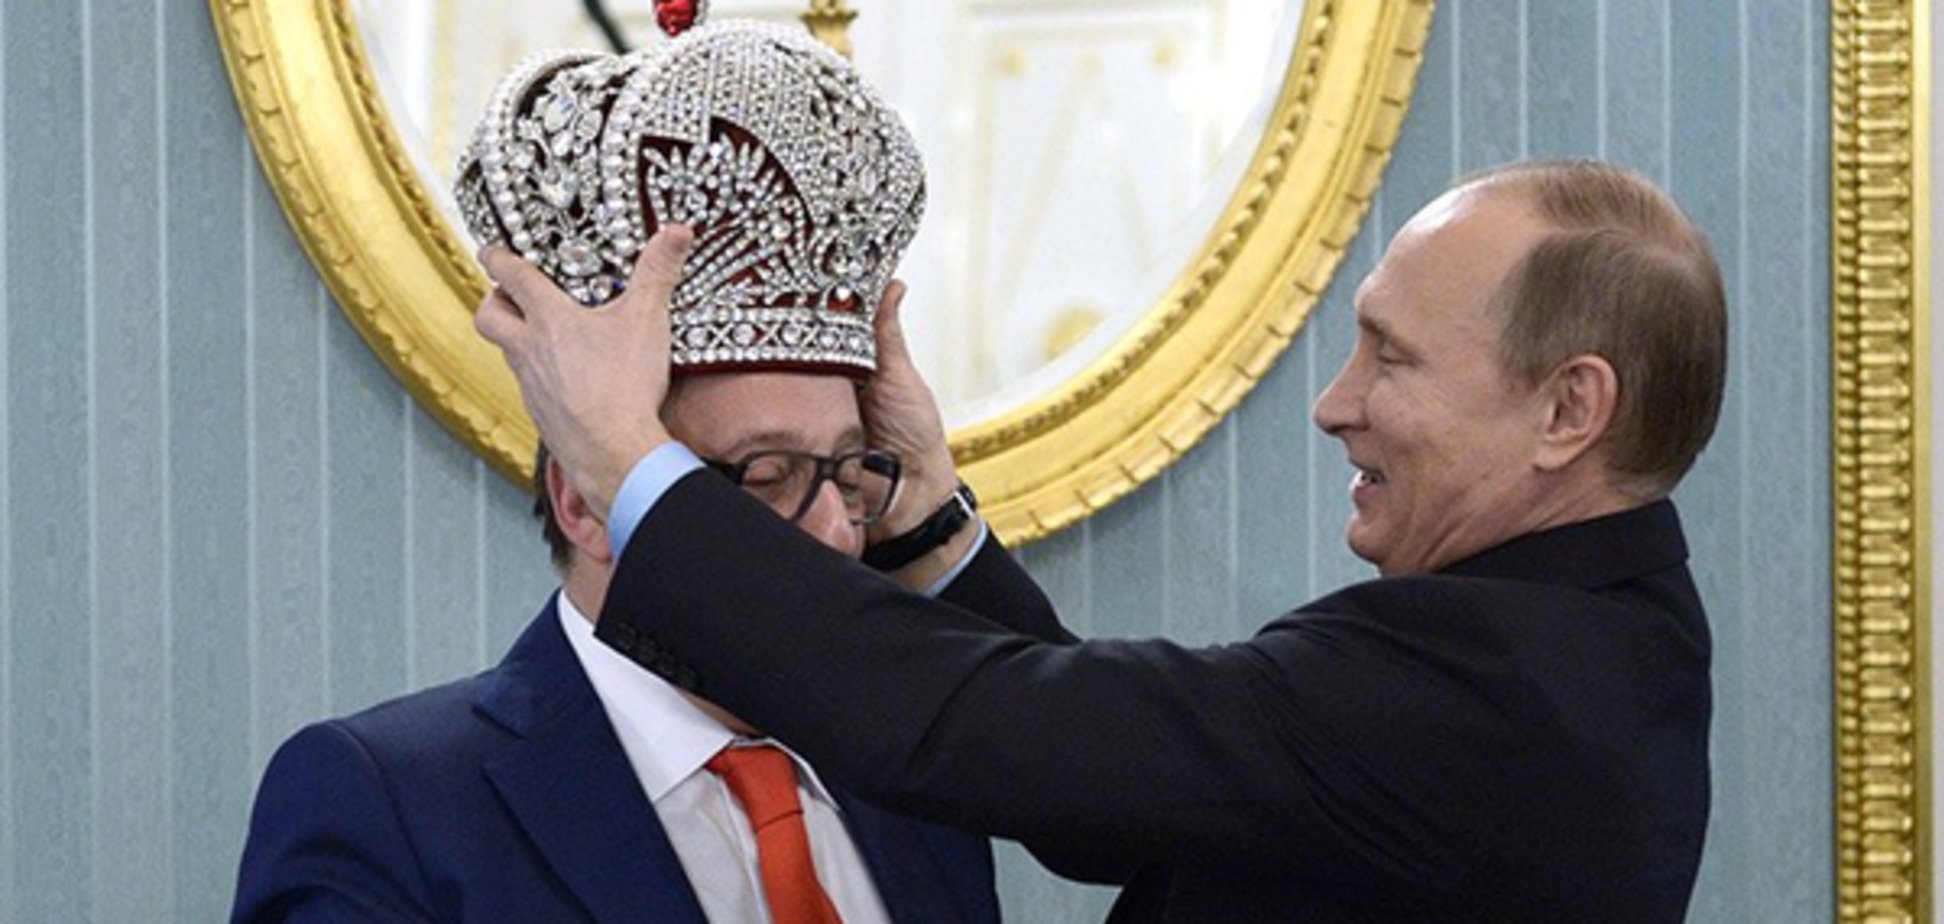 Заставь дурака молиться: советник Порошенко прокомментировал 'коронацию' Путина